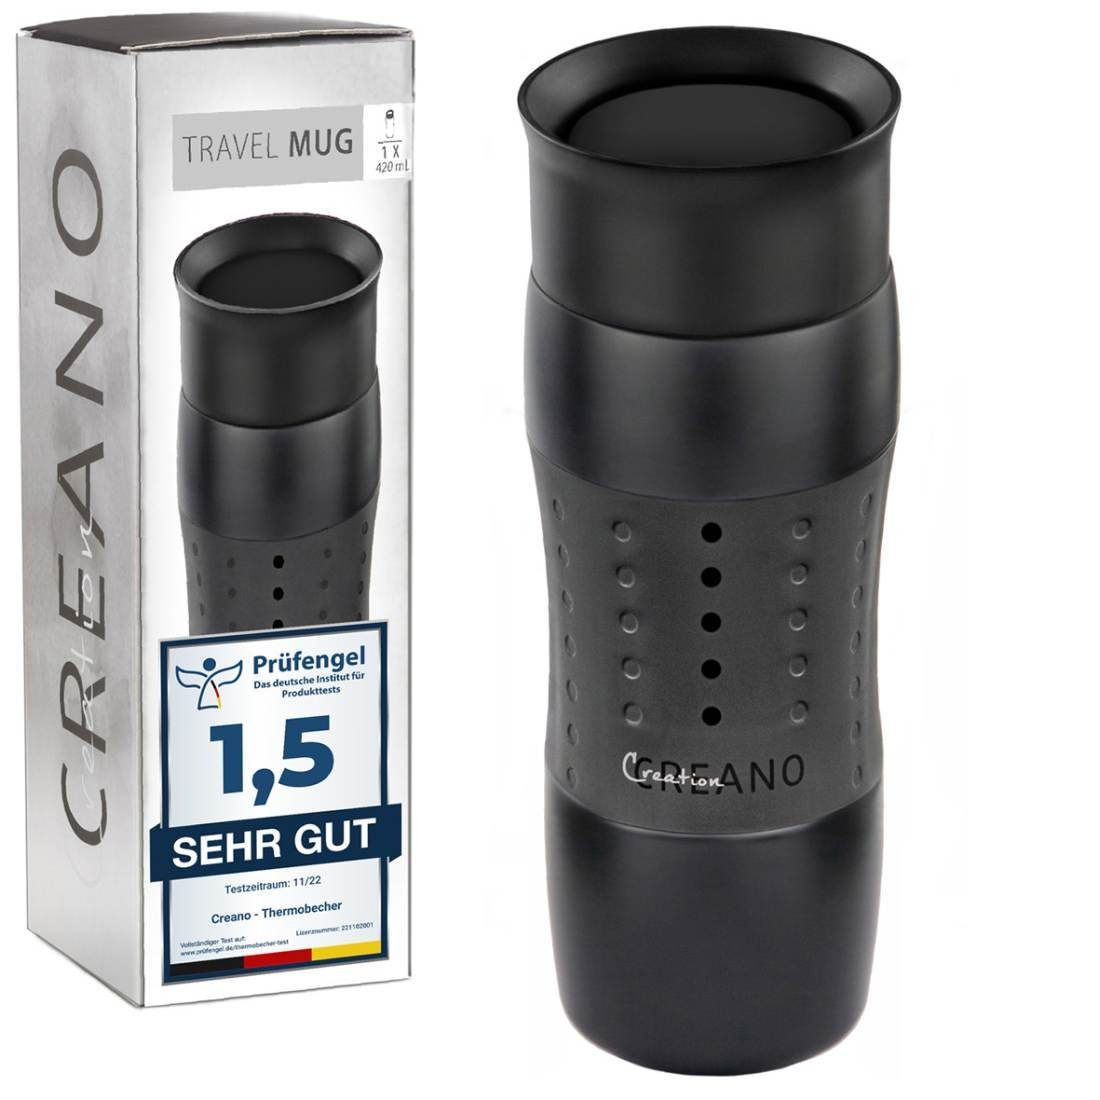 Creano Thermoflasche 420ml, Öffnung Travel abnehmbare für einache Reinigung Design Mug